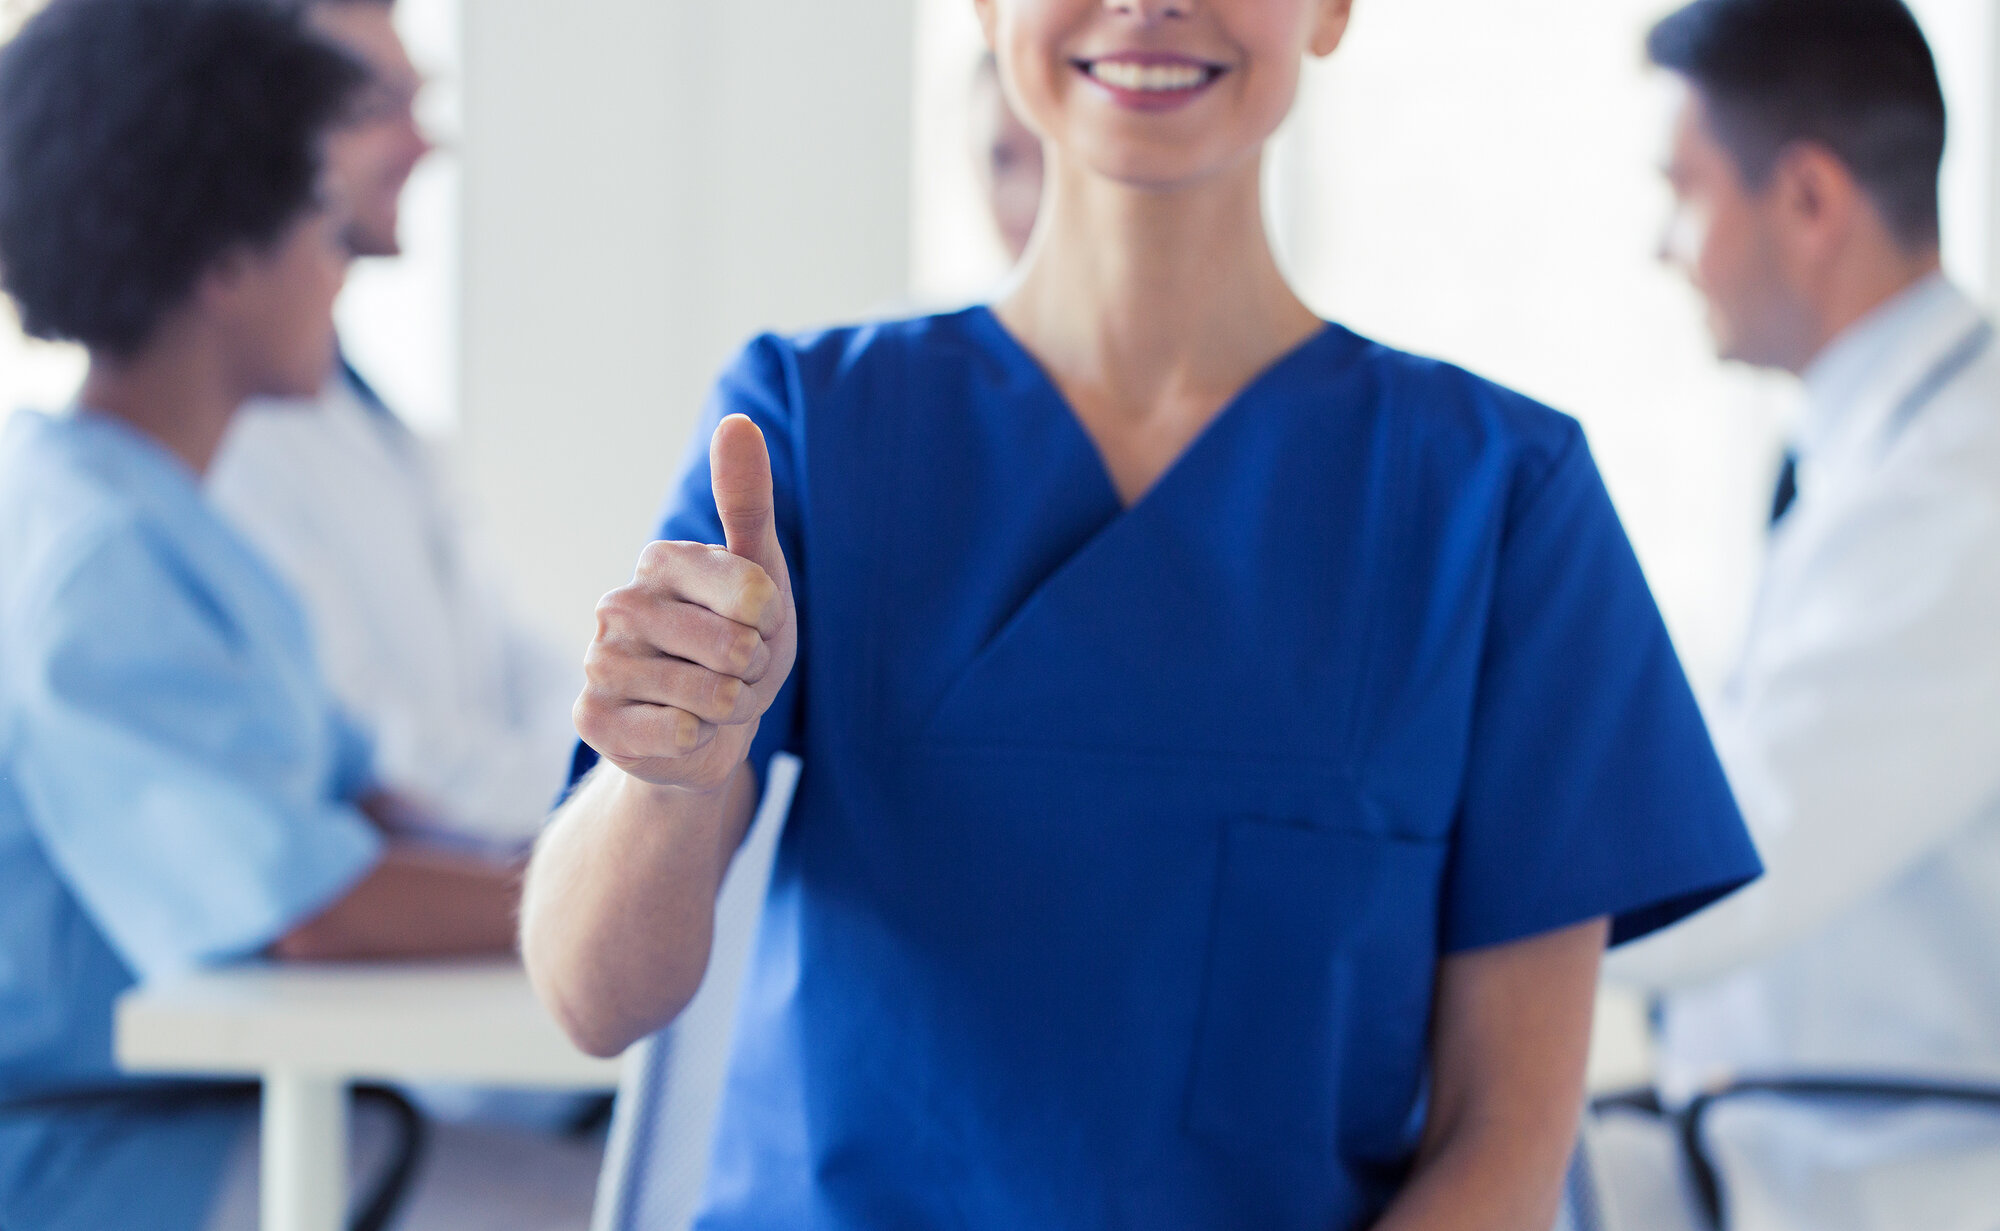 Bildet viser en sykepleier i front som viser "tommel opp" mens hun smiler.